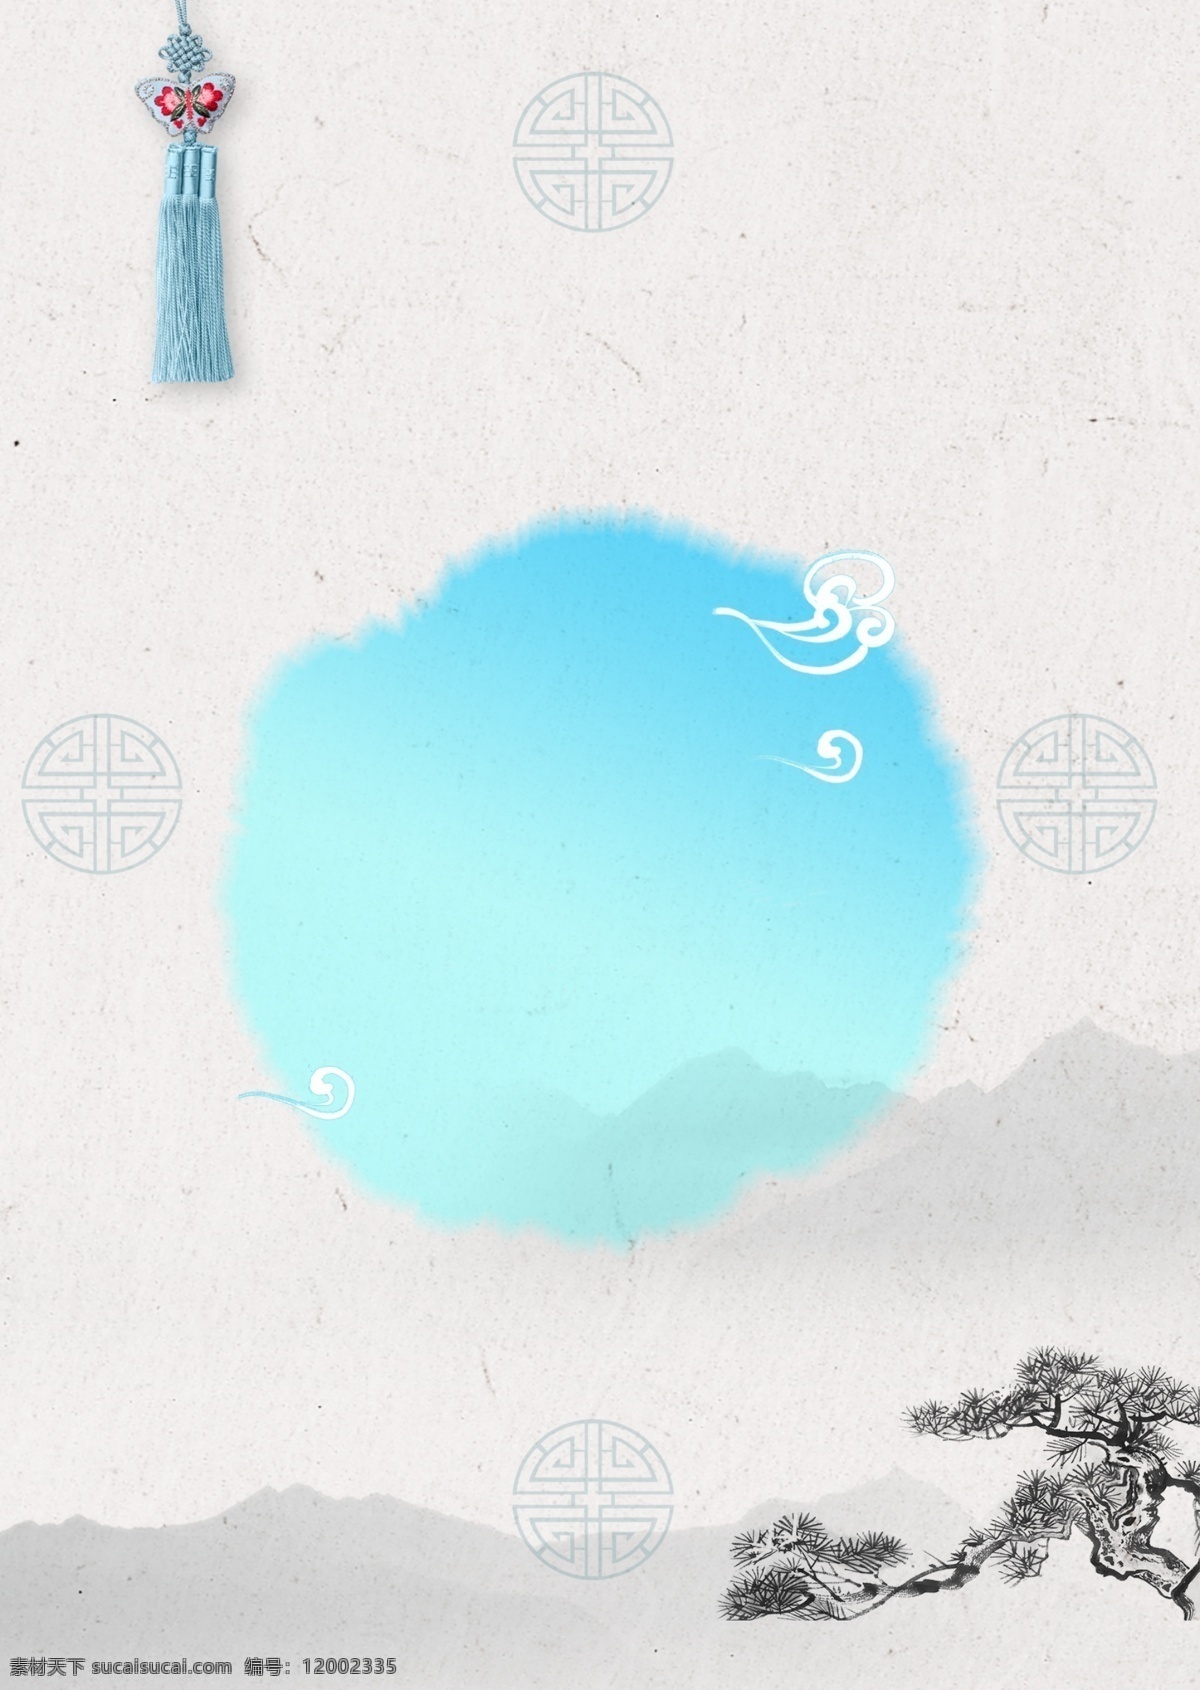 朴素 墨水 店 传统 海报 背景 简练 山 山水画 松树 墨画 传统图案图案 传统装饰植物 中国 中国风格 蓝色墨水点 海报背景